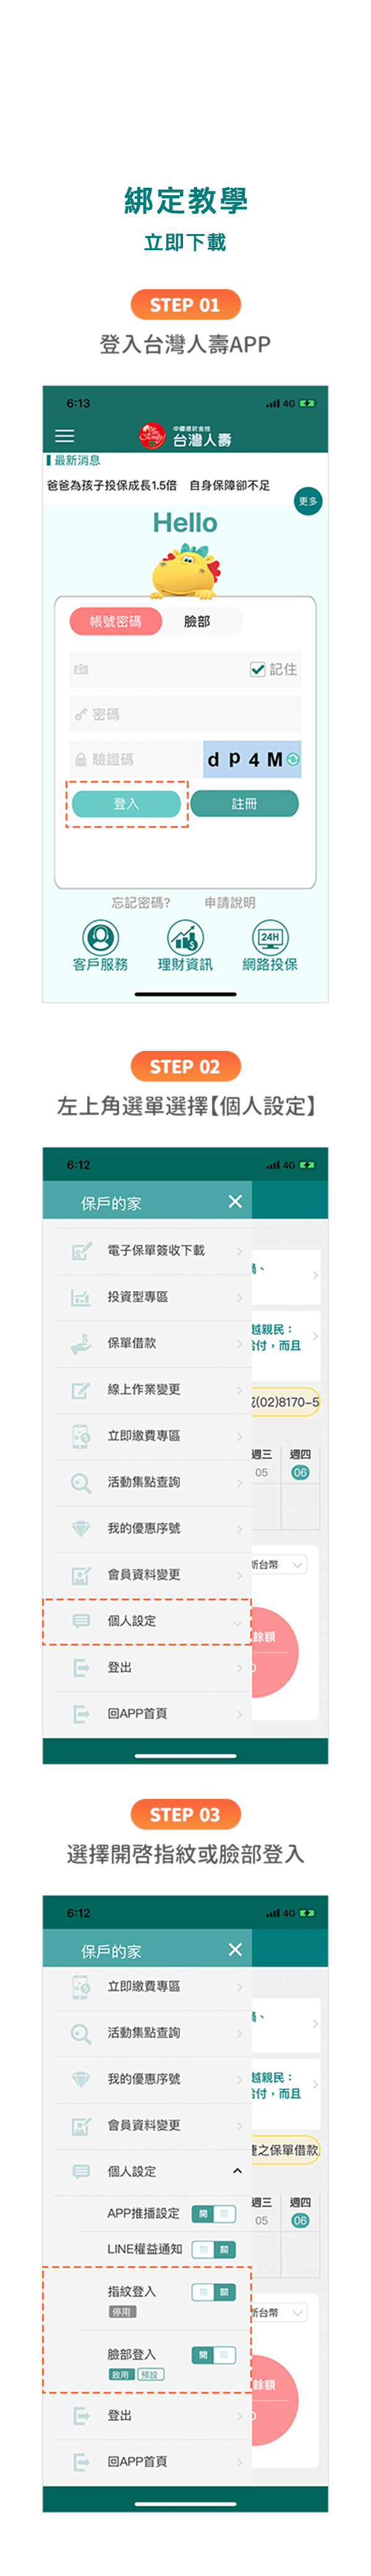 綁定教學-登入台灣人壽APP、進入個人設定、開啟指紋或臉部登入